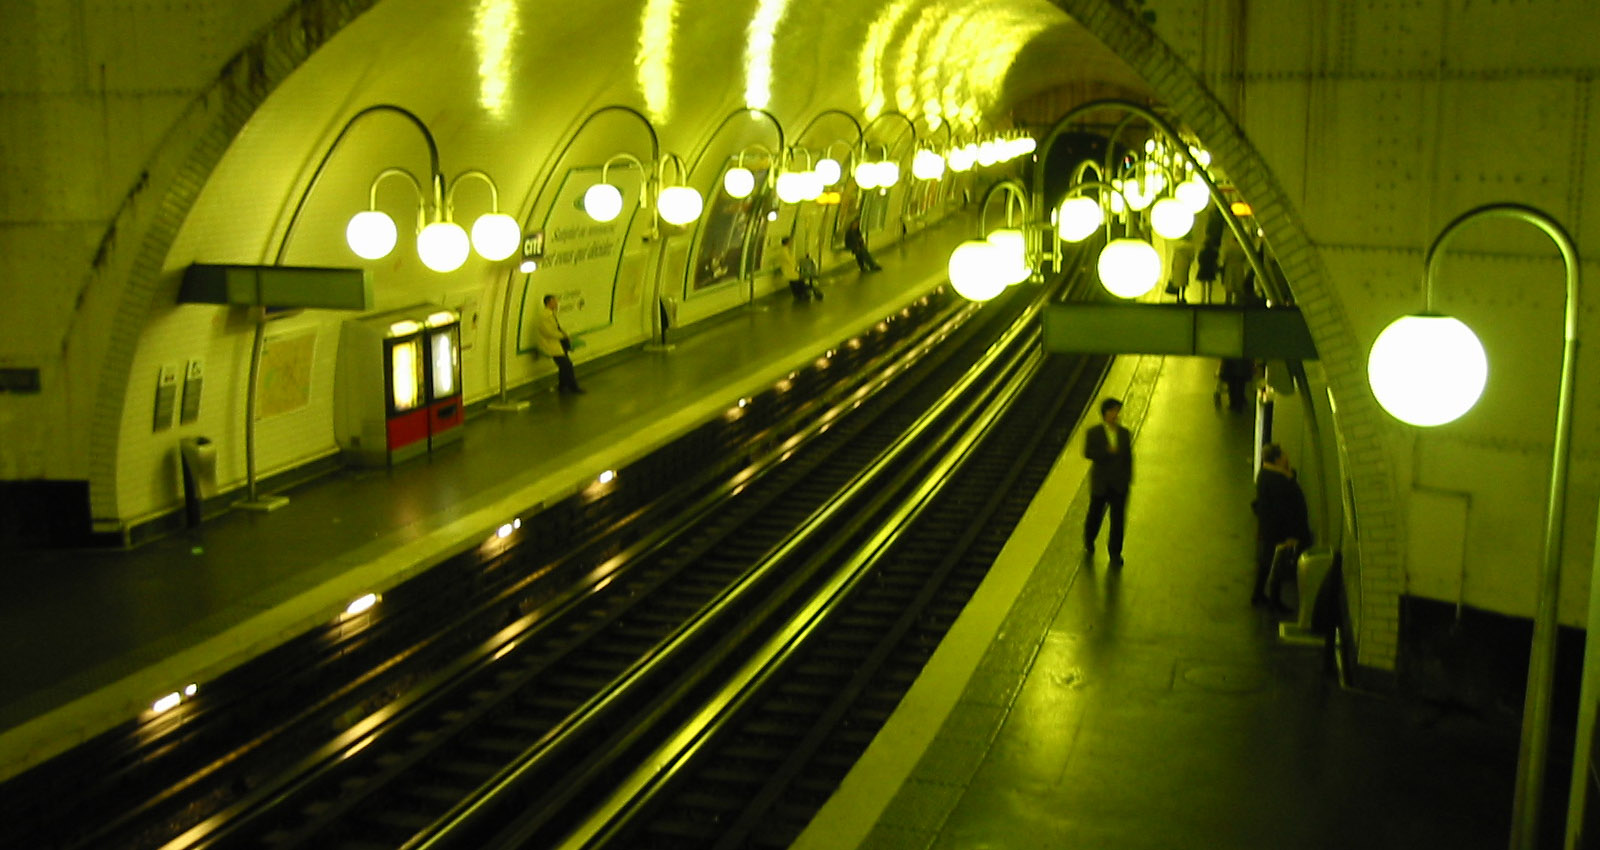 A Paris underground train station